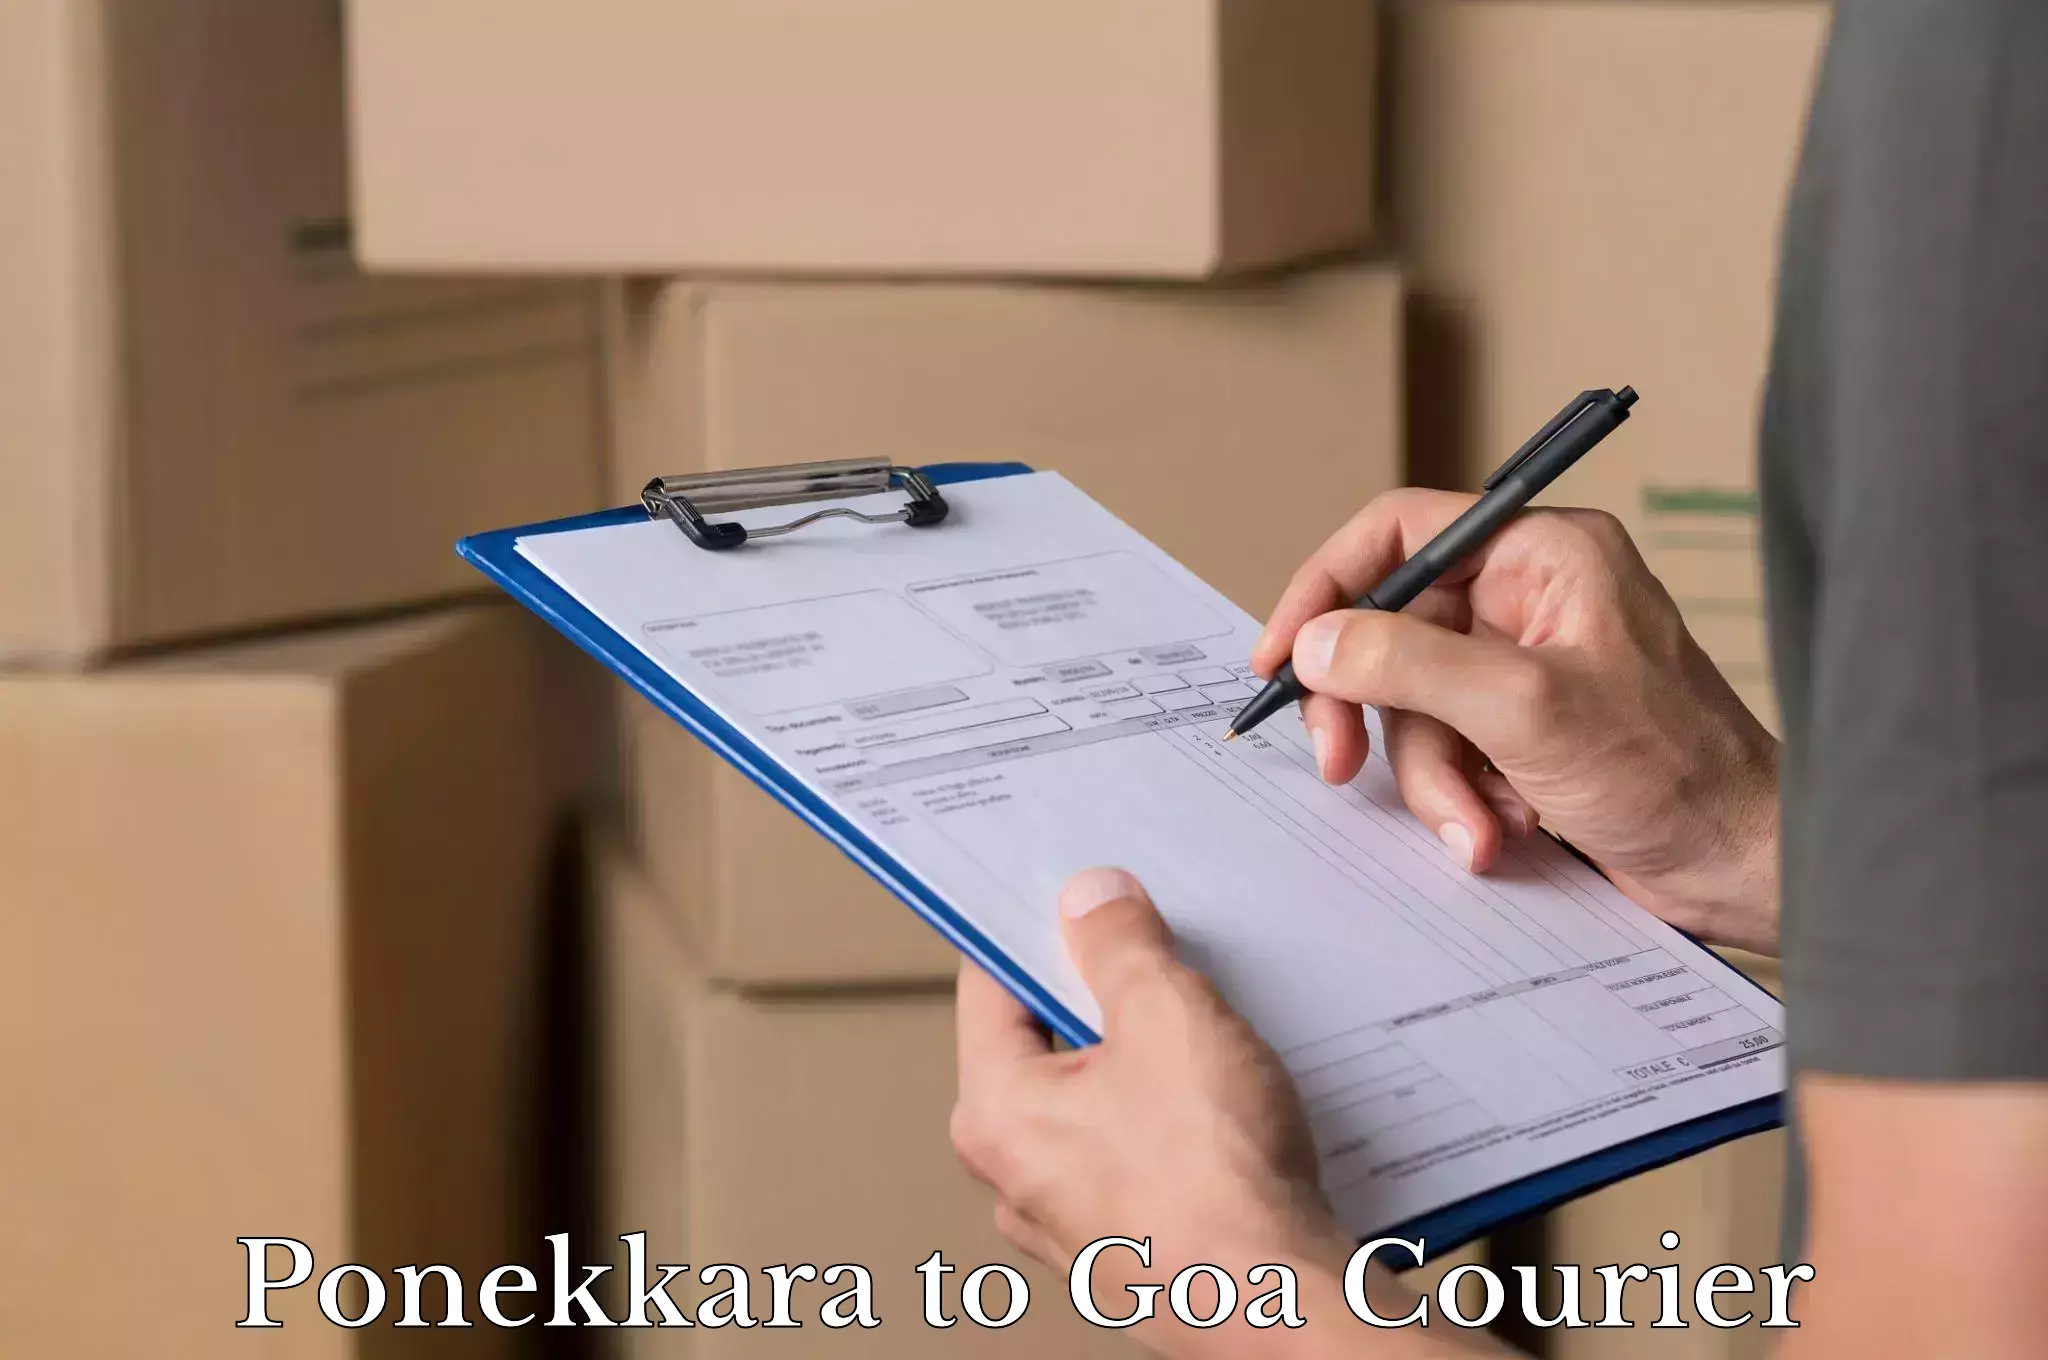 Luggage transport deals Ponekkara to Ponda